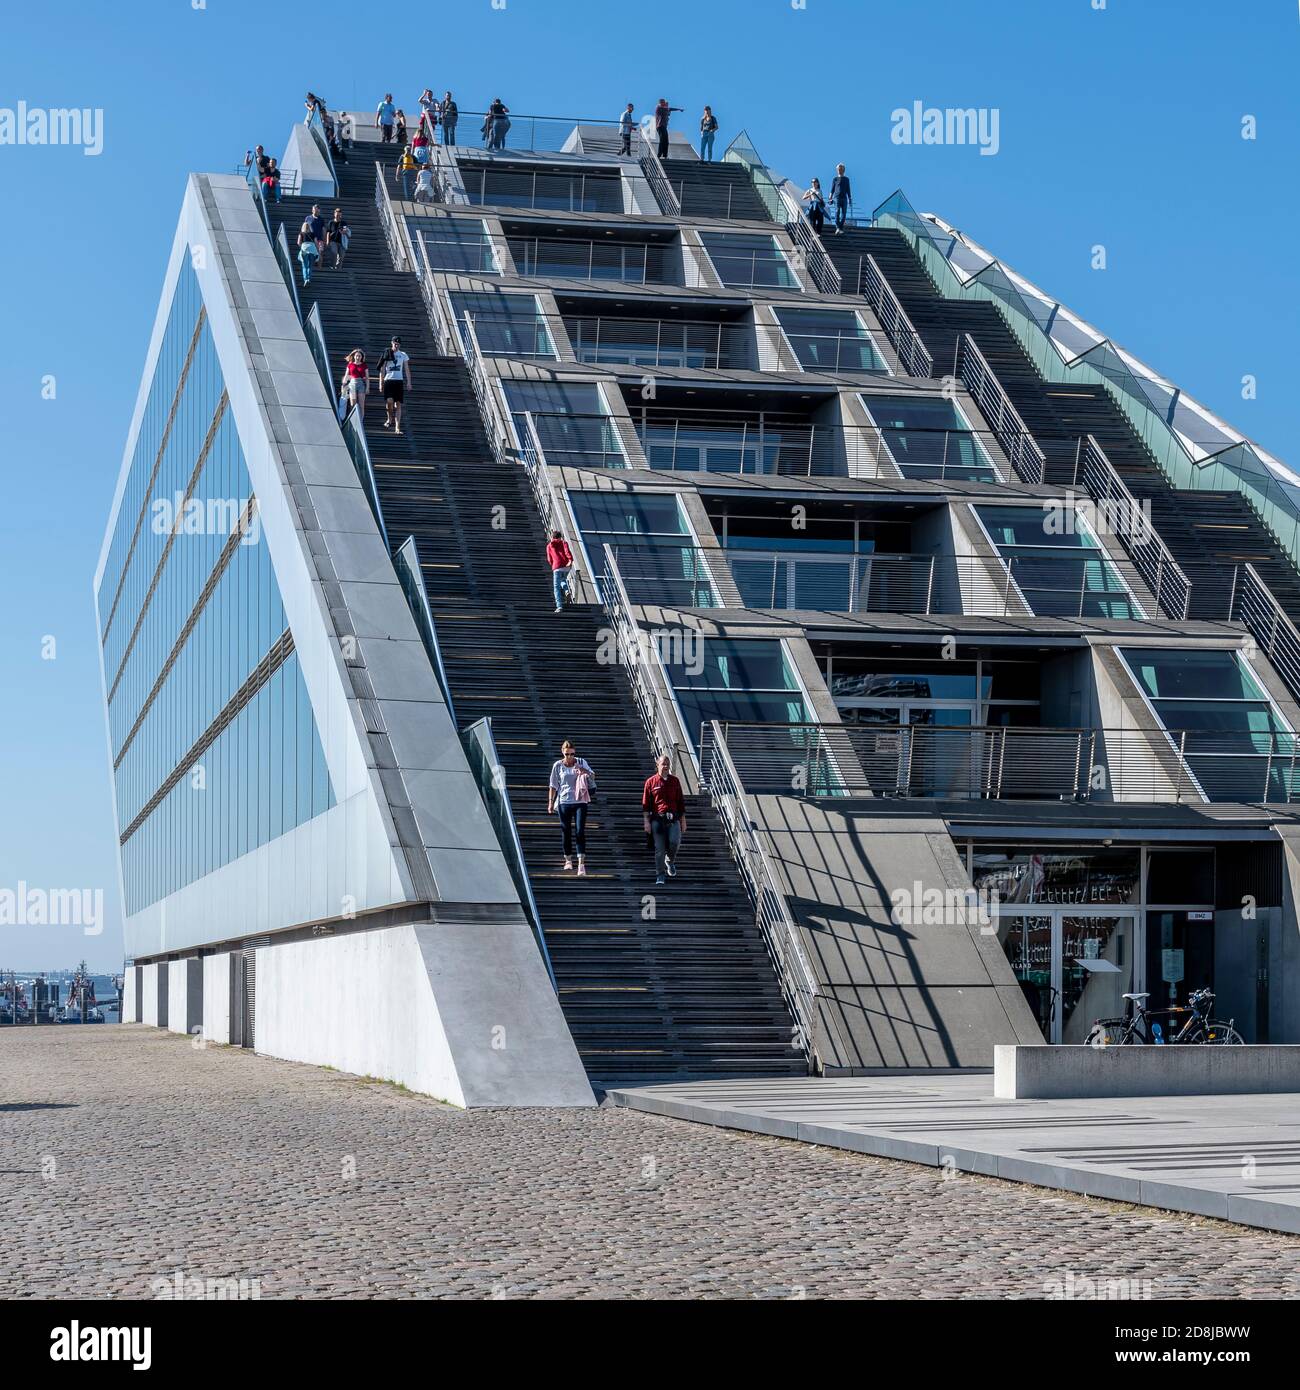 Das pointige schiffsförmige Gebäude ist das Dockland Office Building in Hamburg. Über den Büroräumen befinden sich Treppen hinauf zur Aussichtsplattform auf dem Dach. Stockfoto